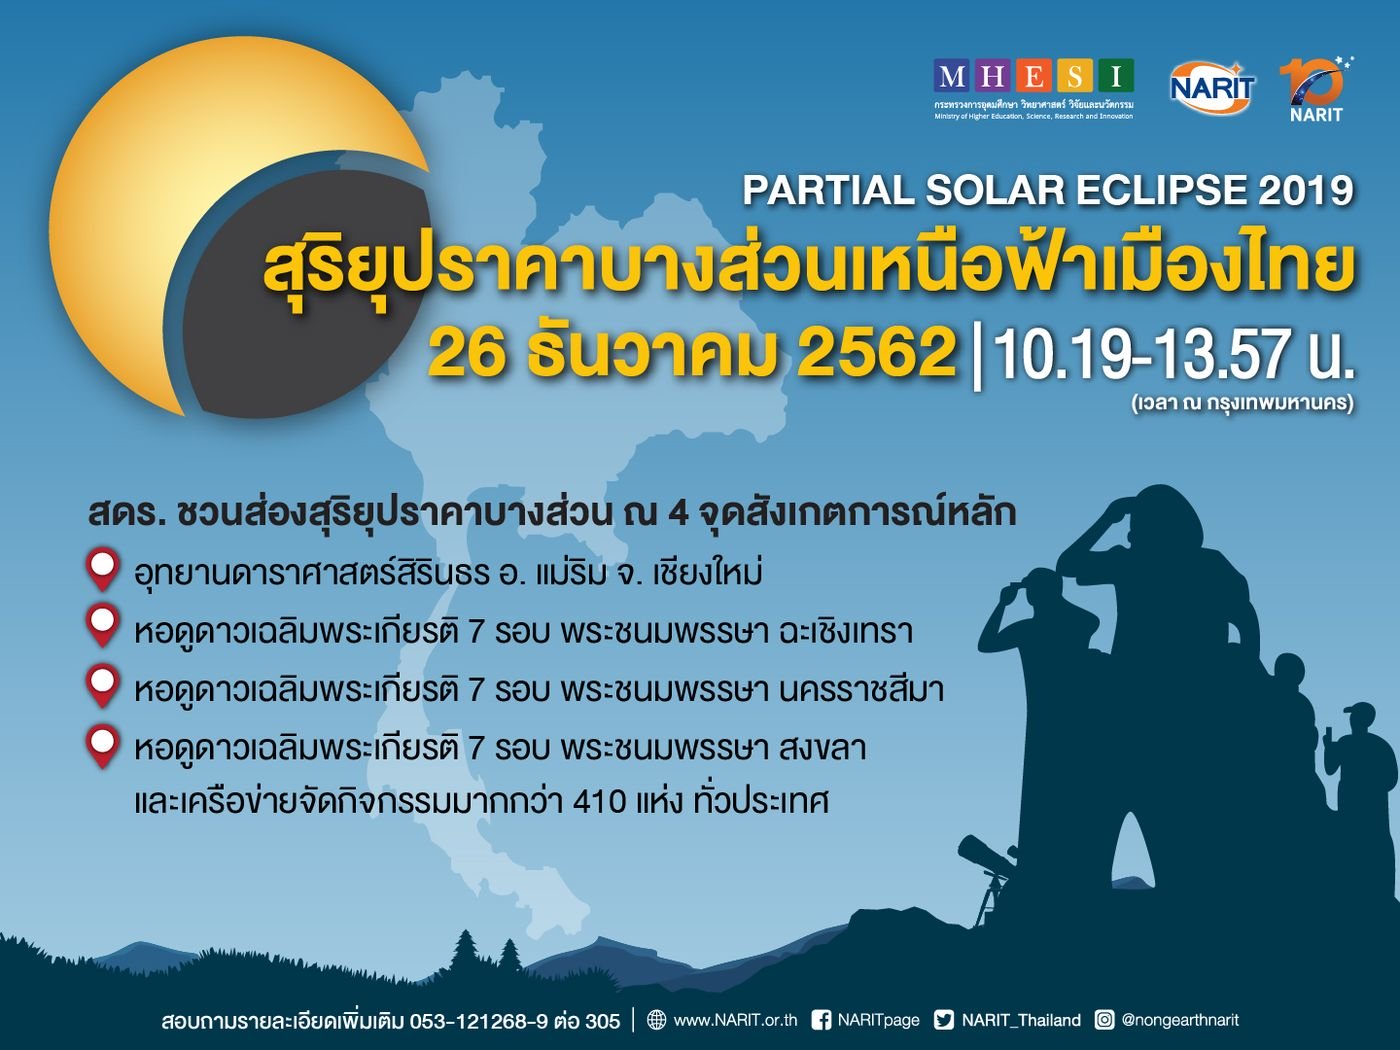 26 ธันวา ชวนจับตา “สุริยุปราคาบางส่วนเหนือฟ้าเมืองไทย” ส่งท้ายปี